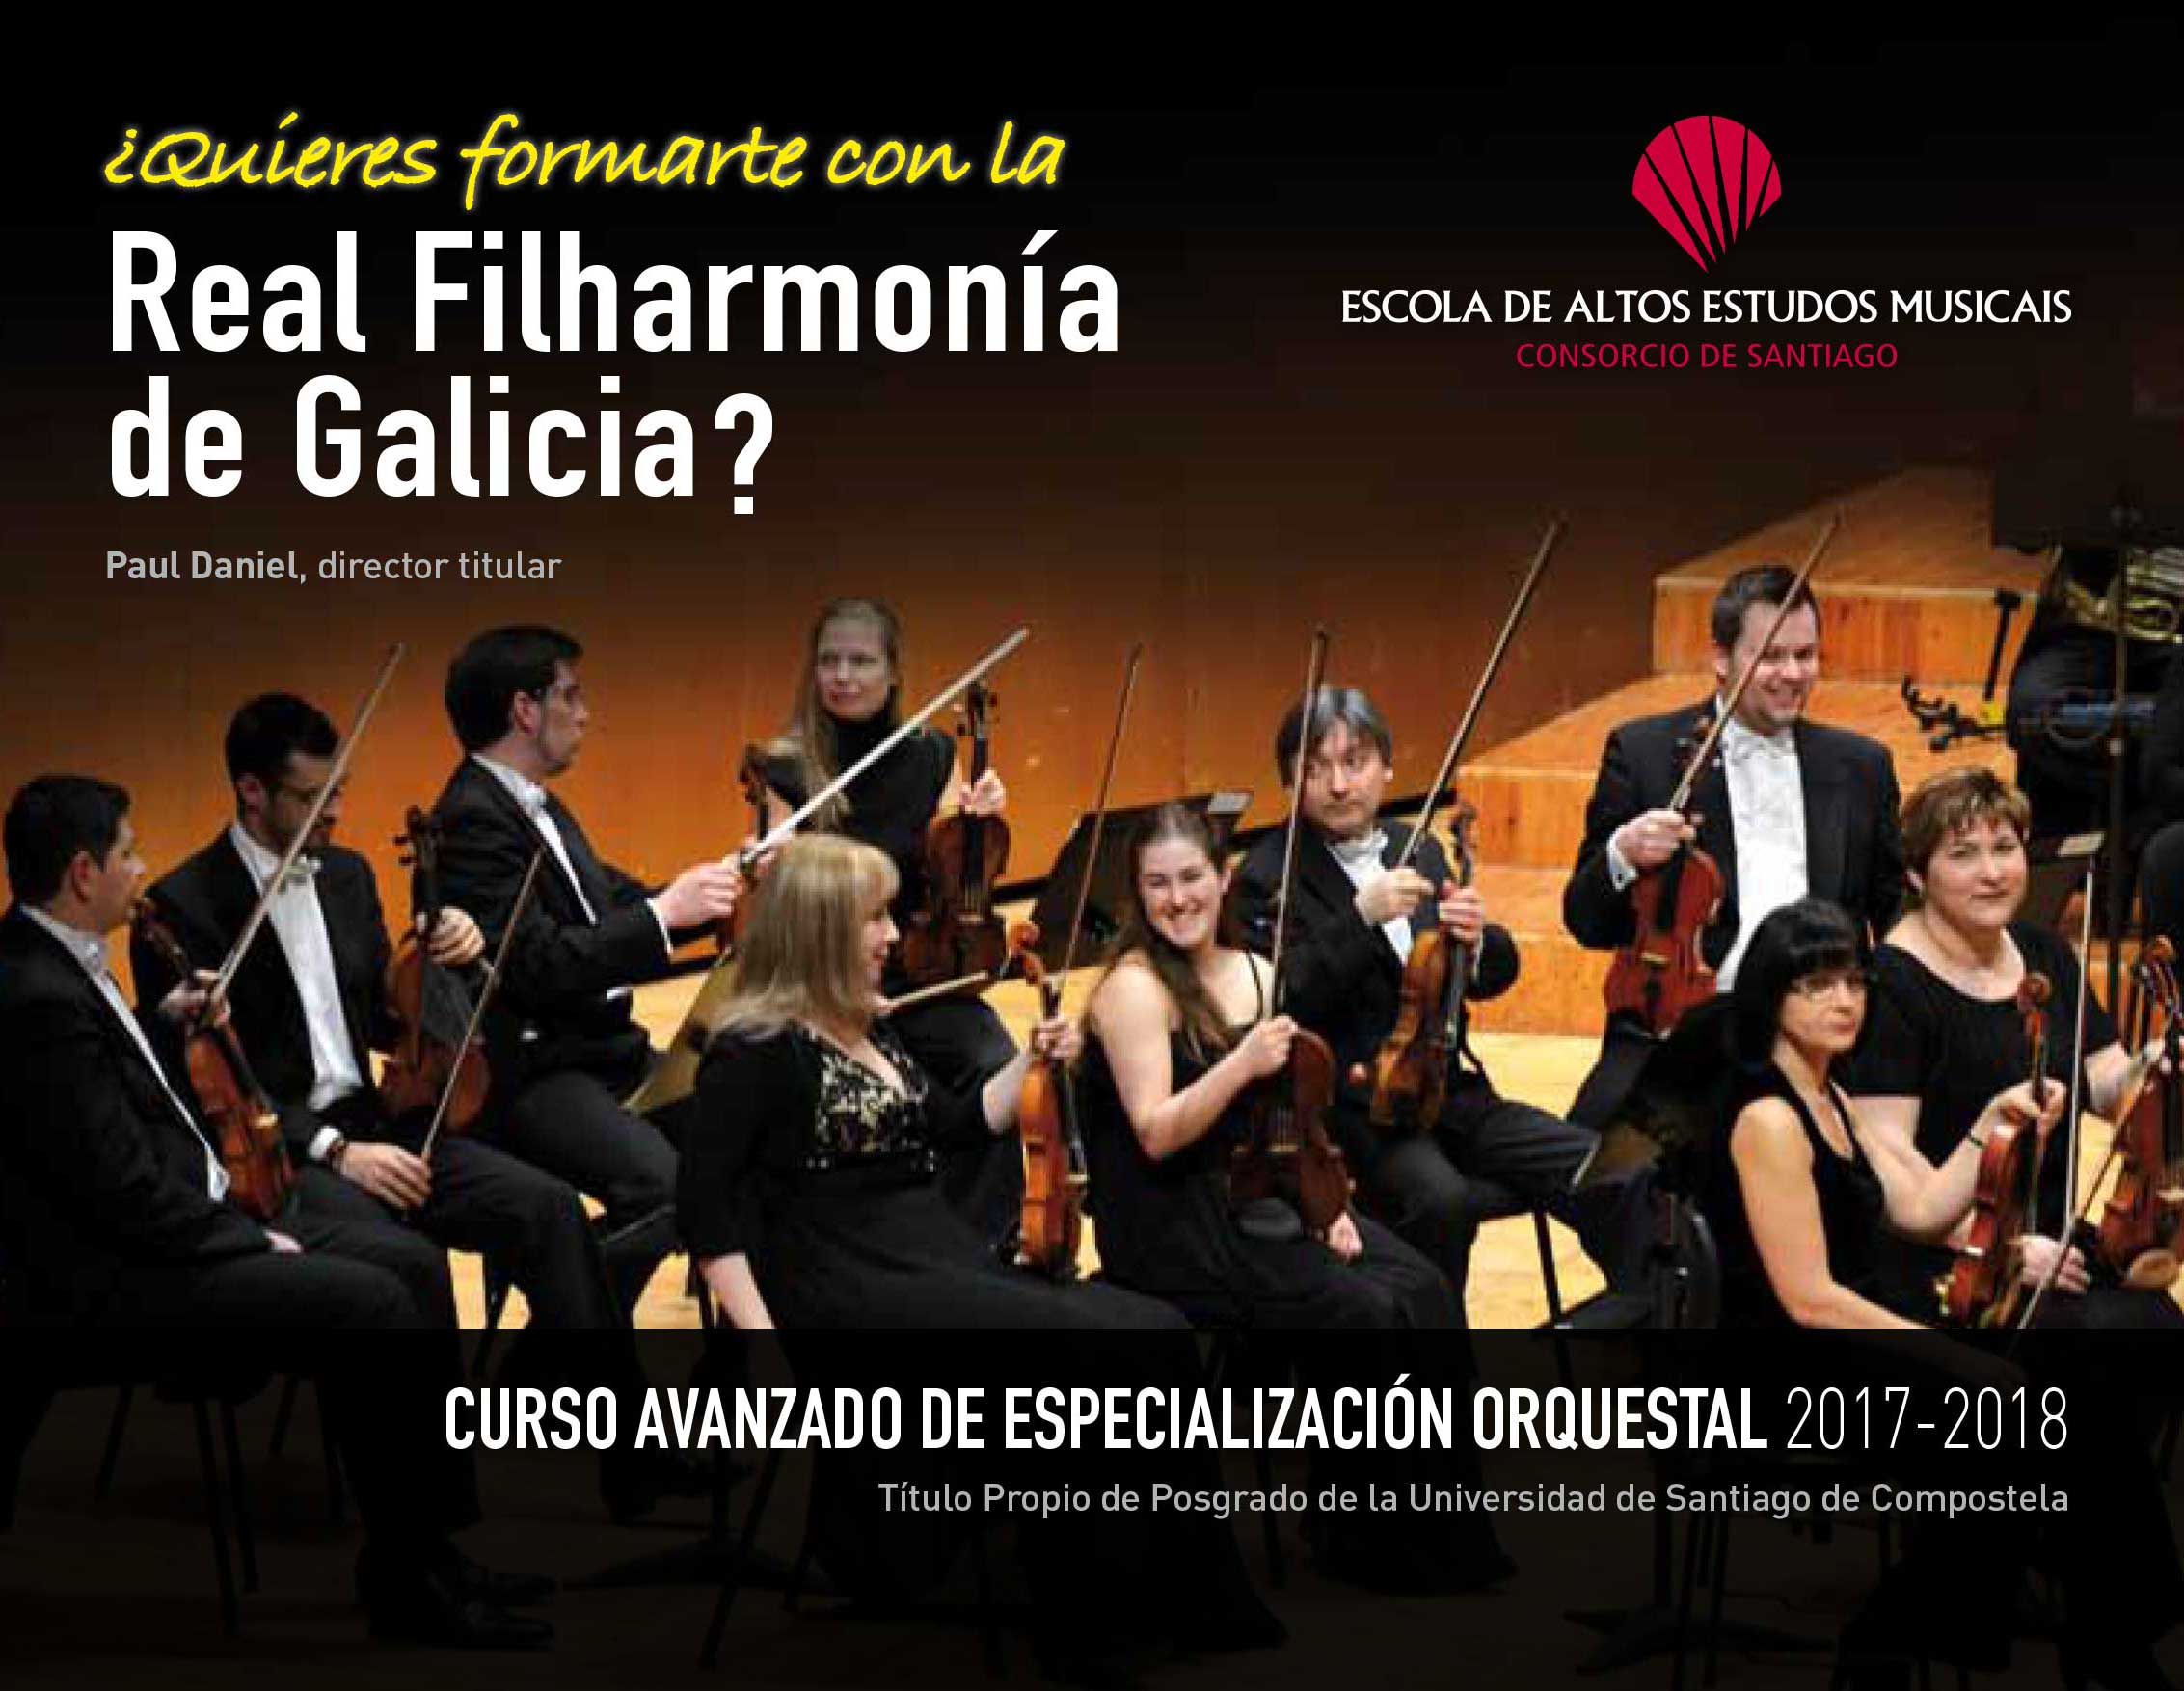 http://www.eaem.es/es/concertos/curso-avanzado-de-especializacion-orquestal